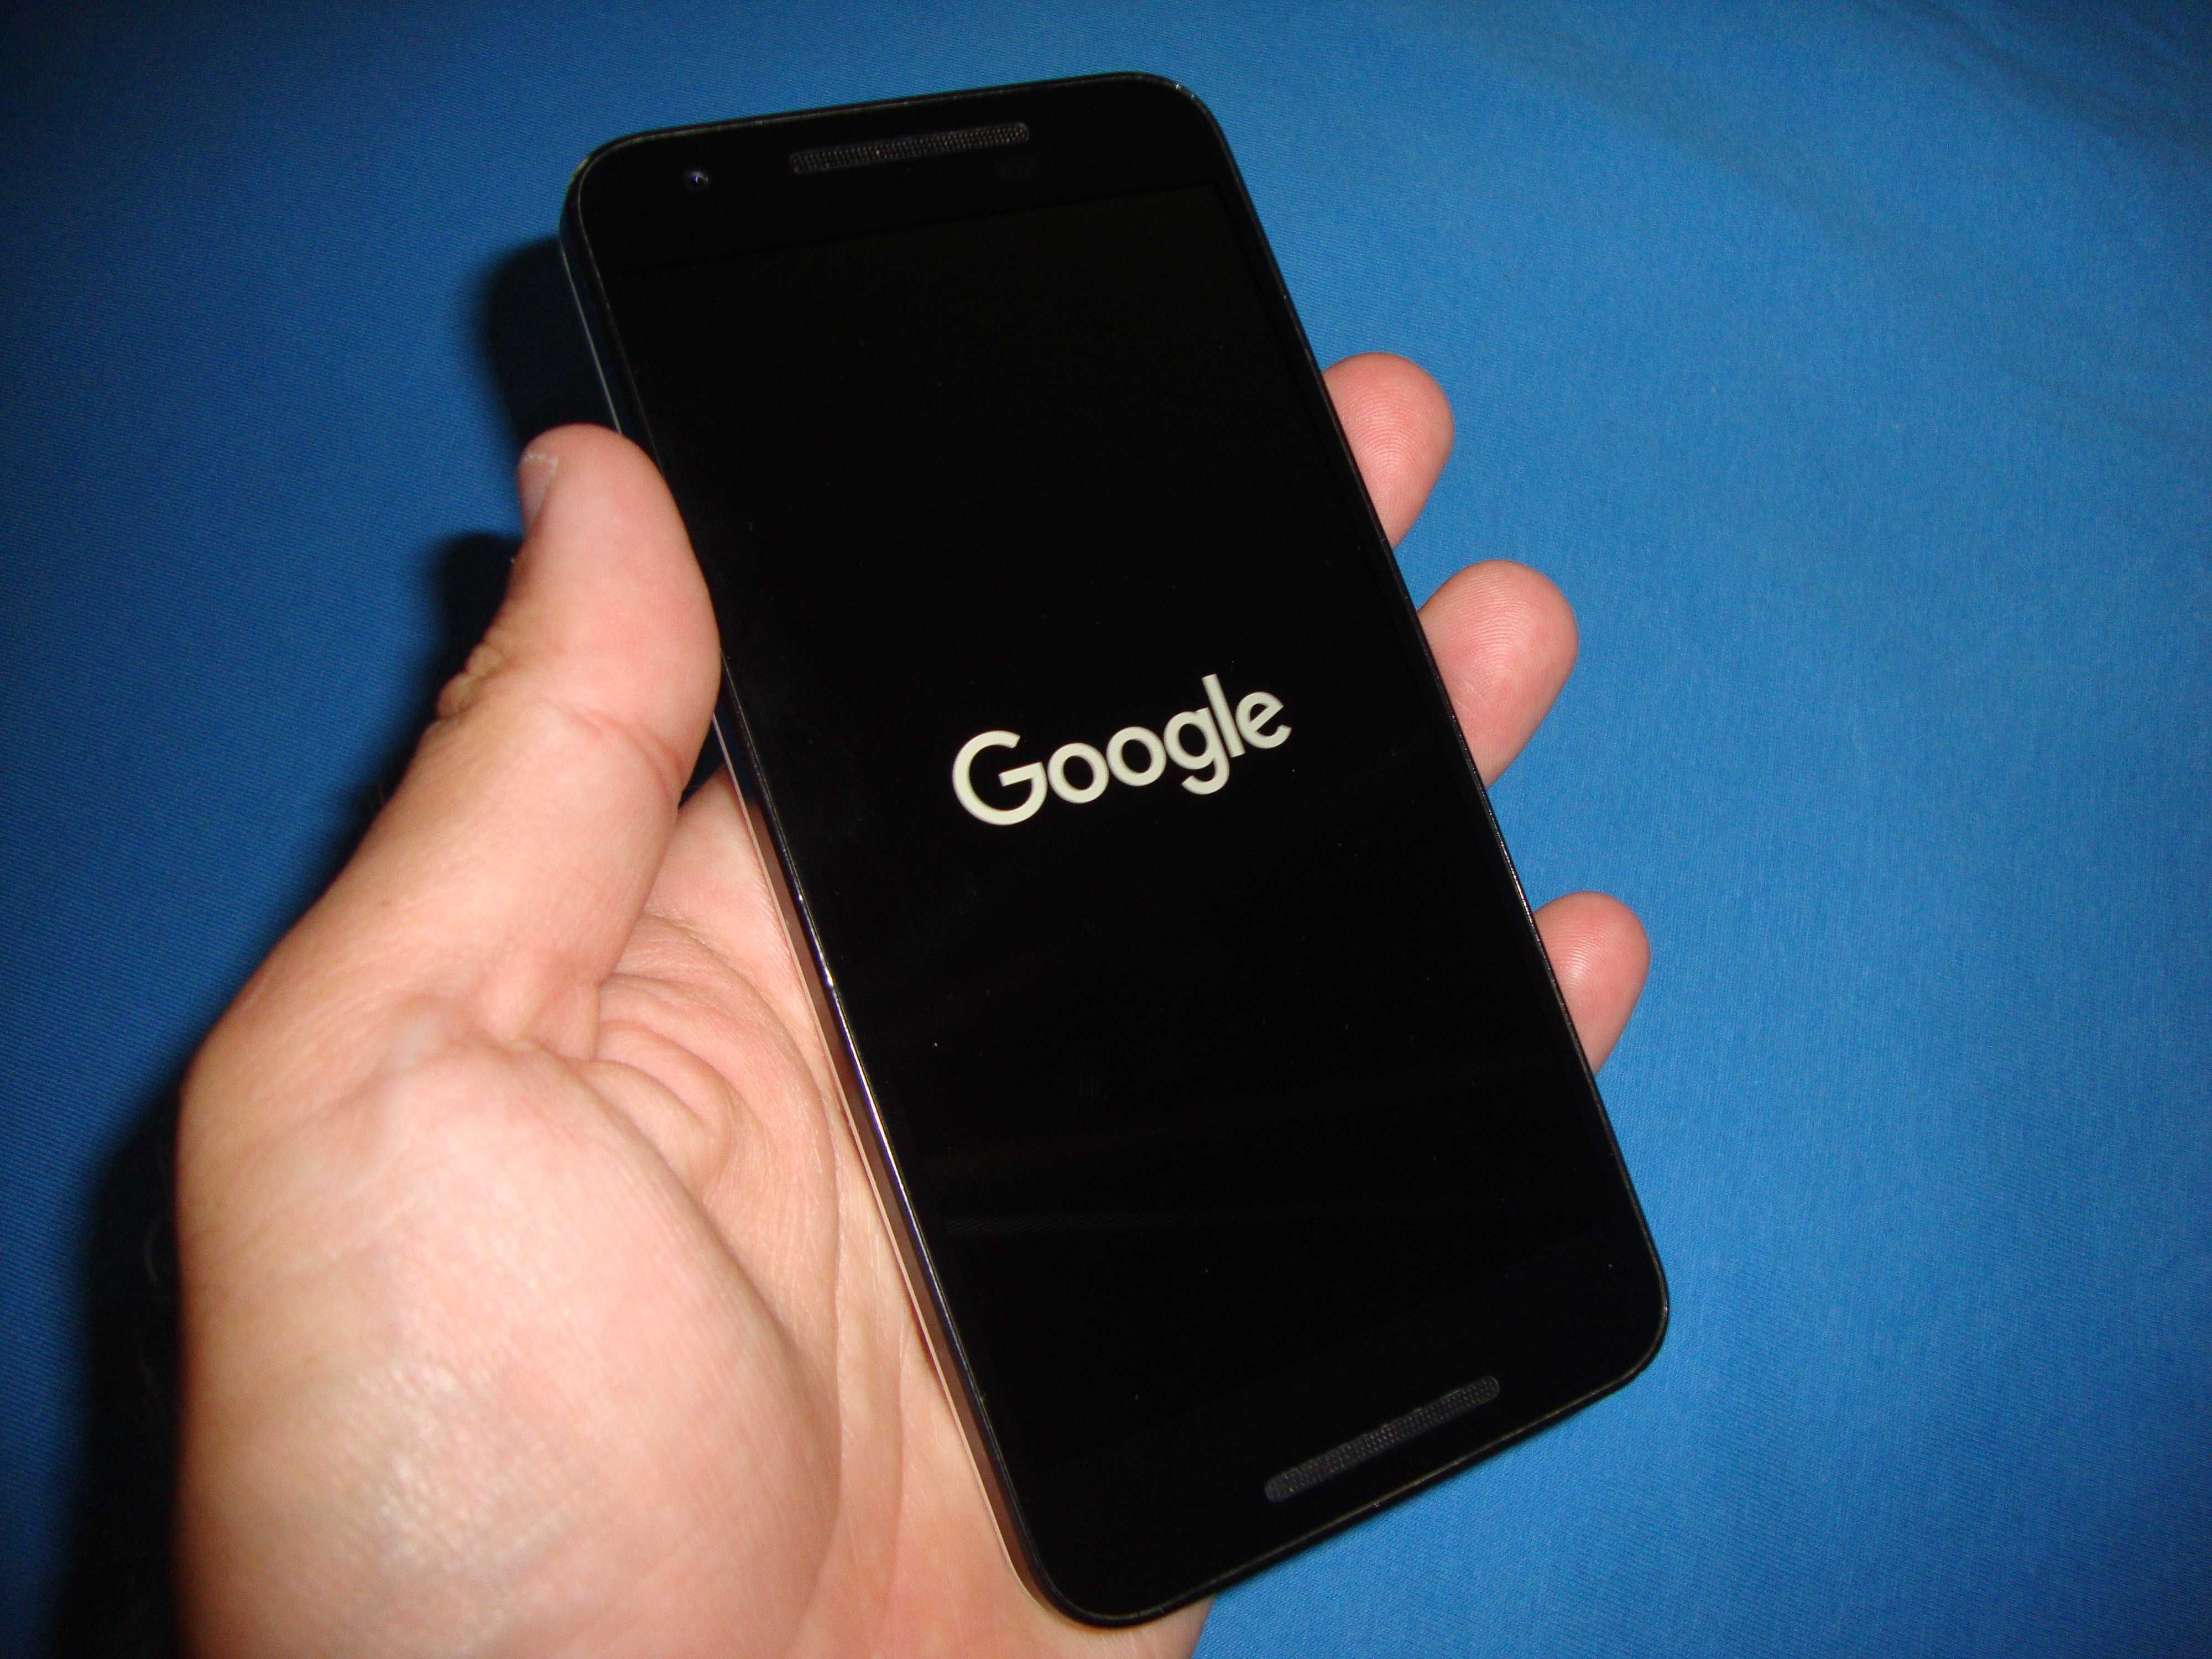 Смартфон LG Nexus 5X 16GB White перезагружается